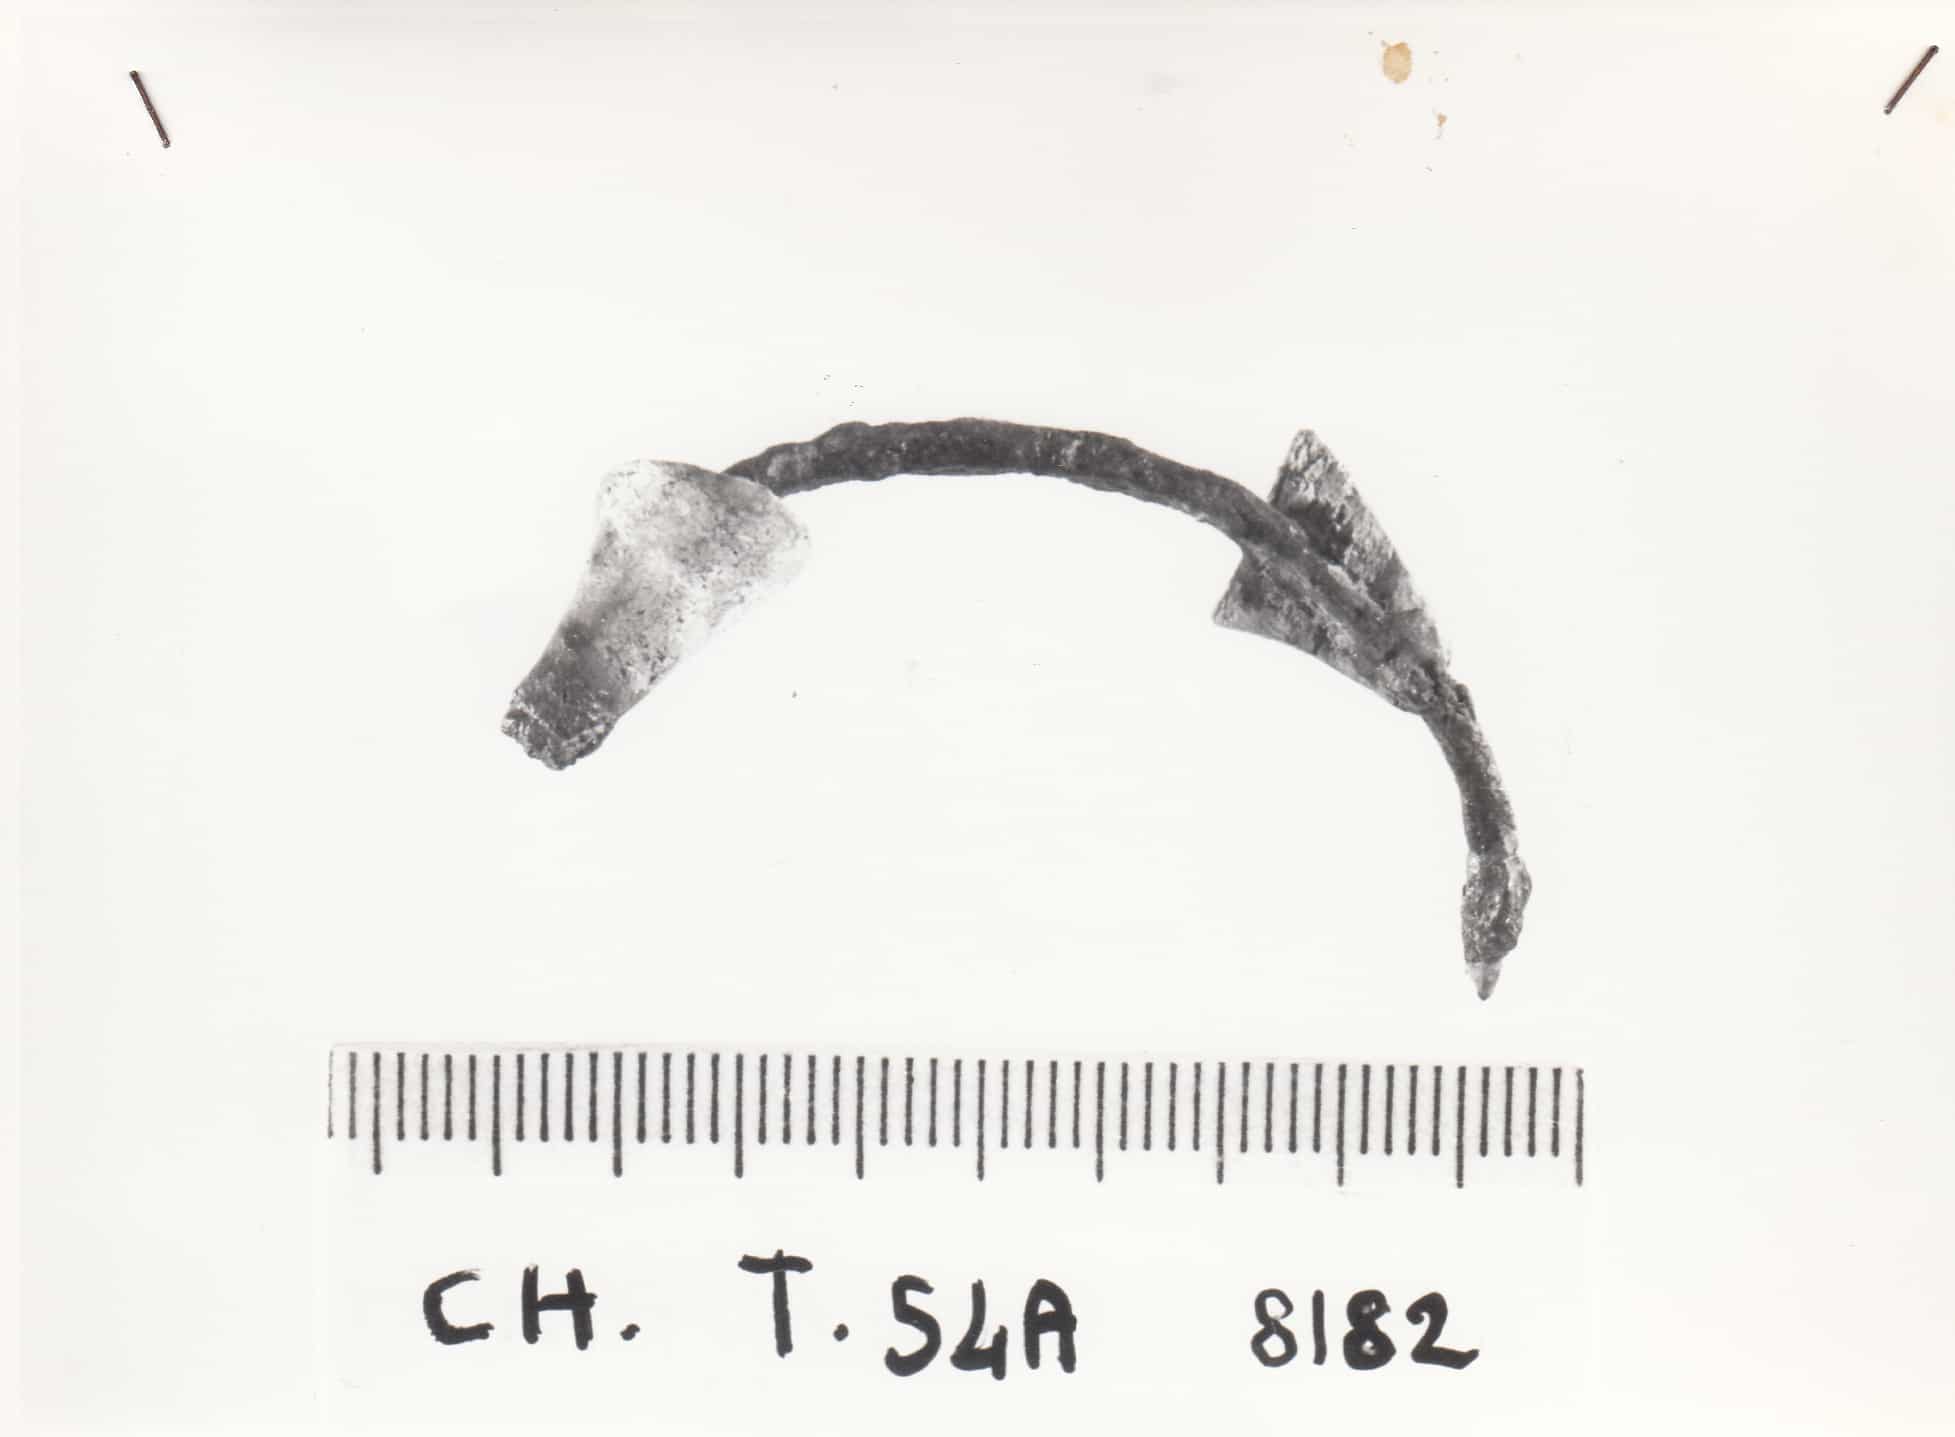 fibula con arco composito - cultura ligure della prima età del Ferro (VII a.C)